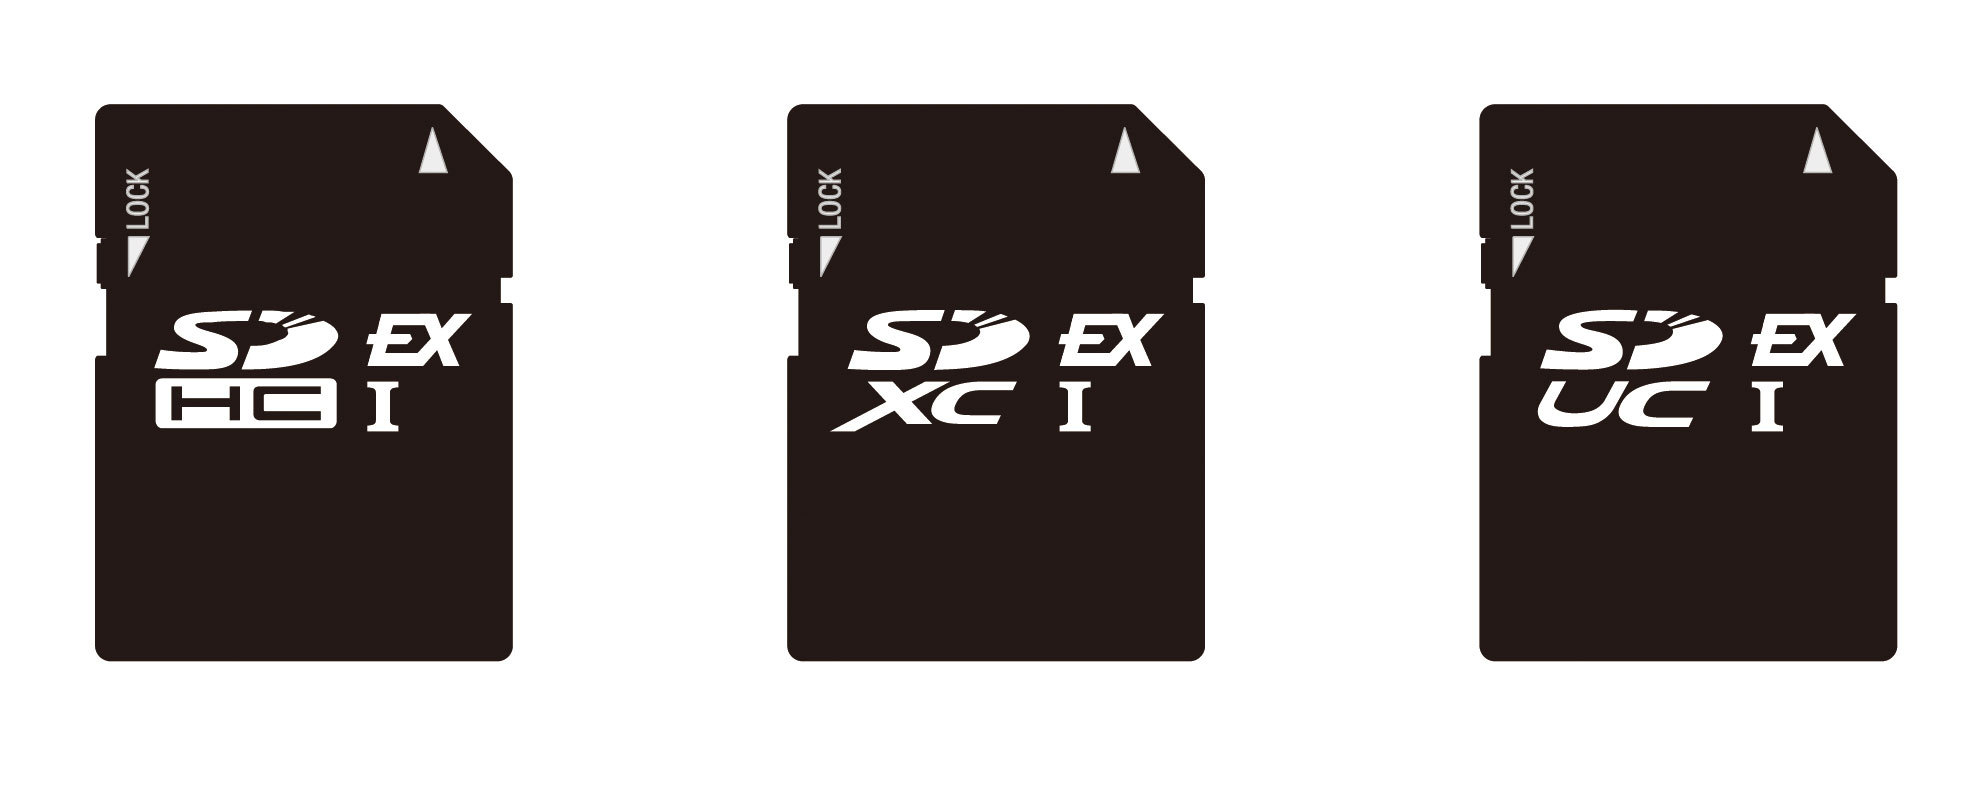 Les cartes mémoire SD Express vont bientôt grimper à 3940 MB/s !